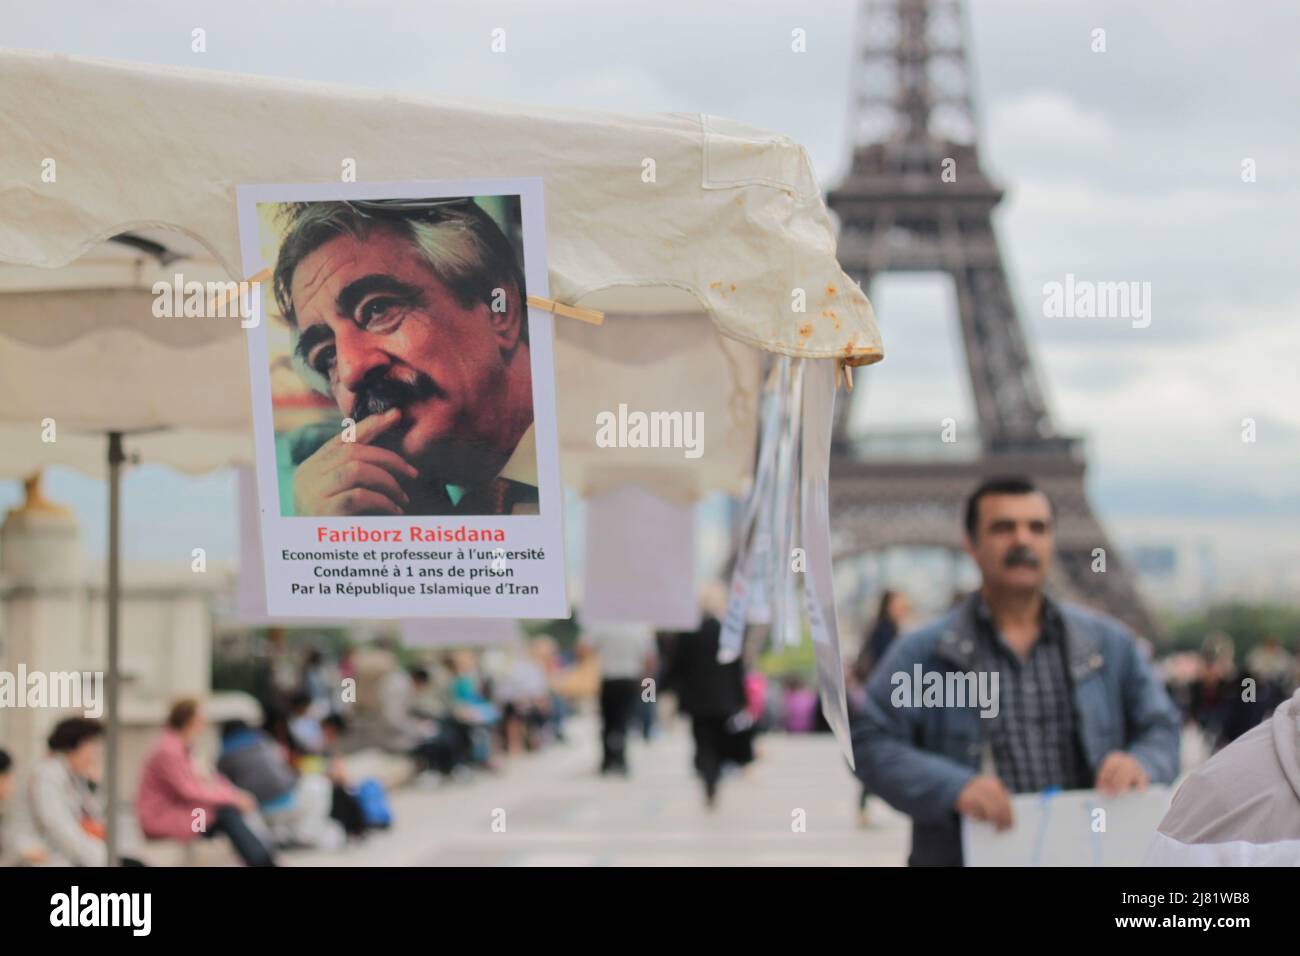 Un stand à Paris de prise aux prisonniers politiques en Iran au Trocadéro Banque D'Images